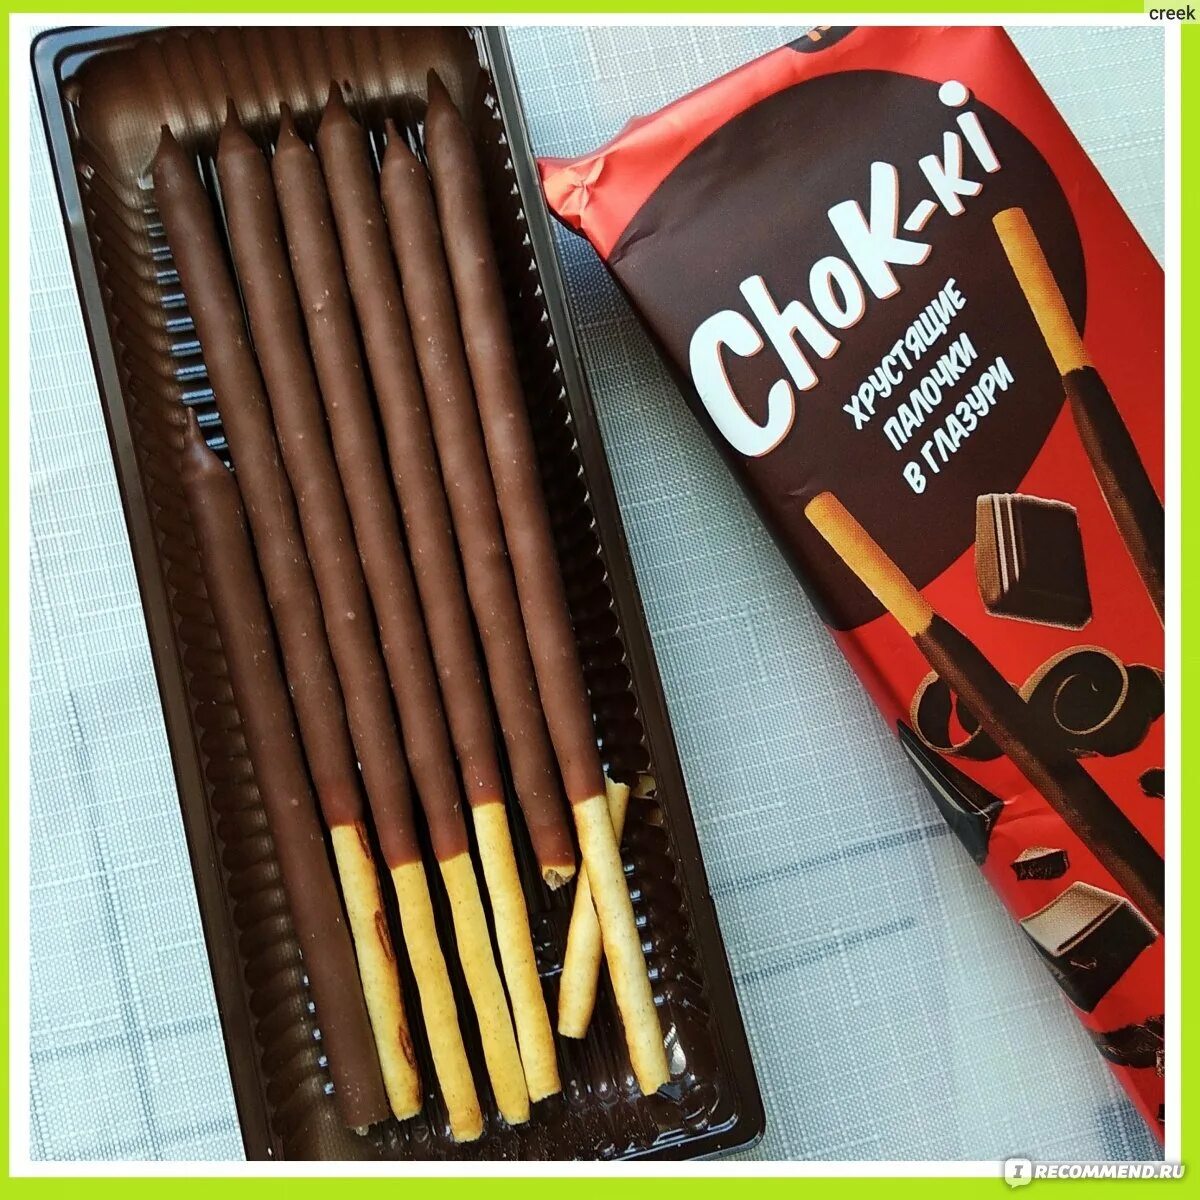 Чок чок шоколад. Палочки соломка с шоколадом Chok ki. Корейские шоколадные палочки Пеперо. Палочки в глазури. Палочки в шоколаднойгдазури.